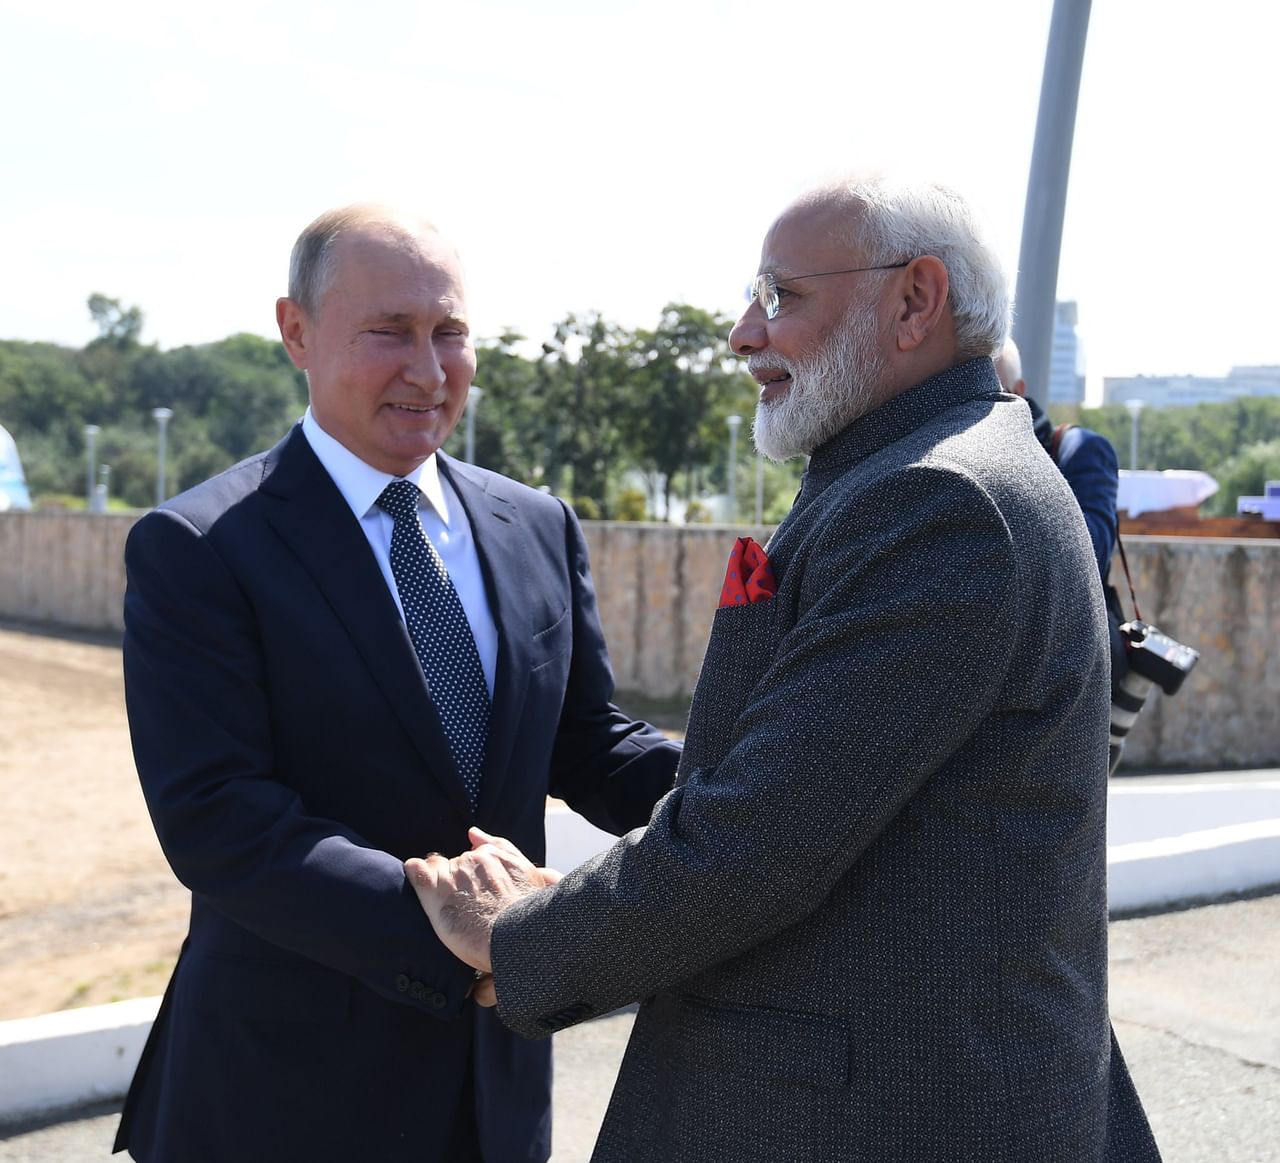 રશિયા હવે ભારતમાં 20 પરમાણુ ઉર્જા એકમોની સ્થાપના કરશે, PM મોદીની મુલાકાત પછી રાષ્ટ્રપતિ પુતિને કરી જાહેરાત